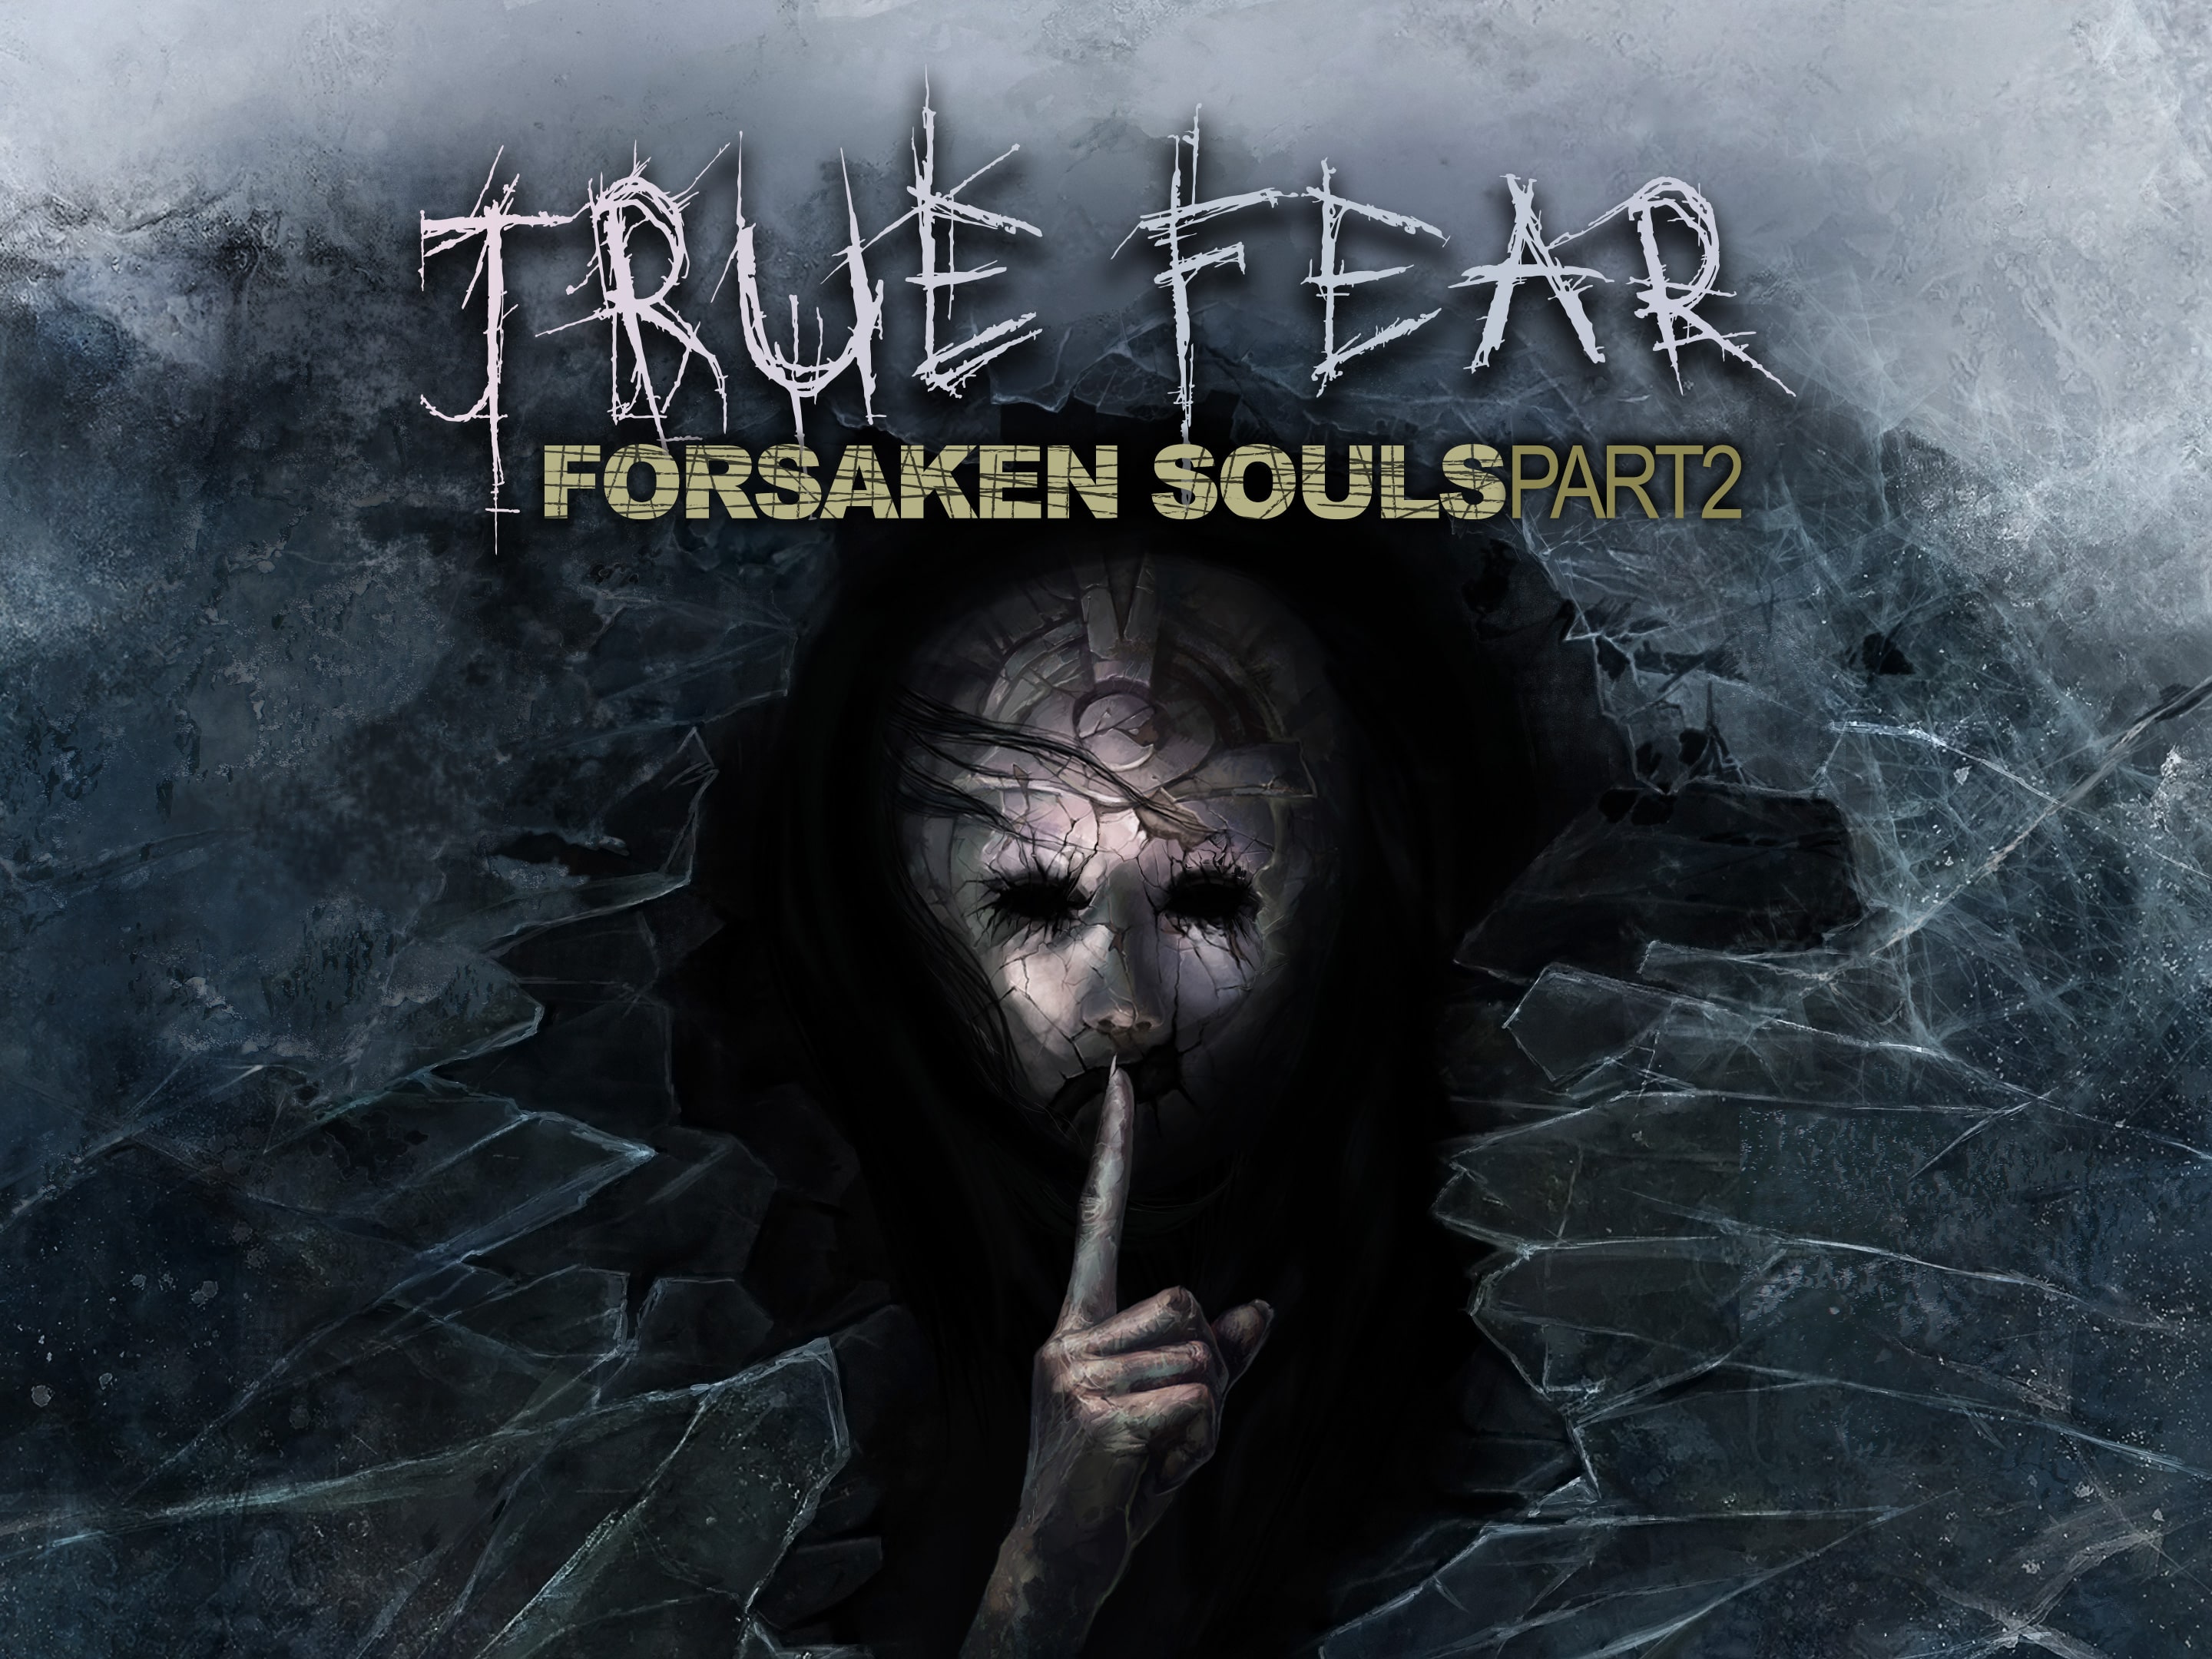 Forsaken souls 3. True Fear: Forsaken Souls Part 2. True Fear: Forsaken Souls Part.